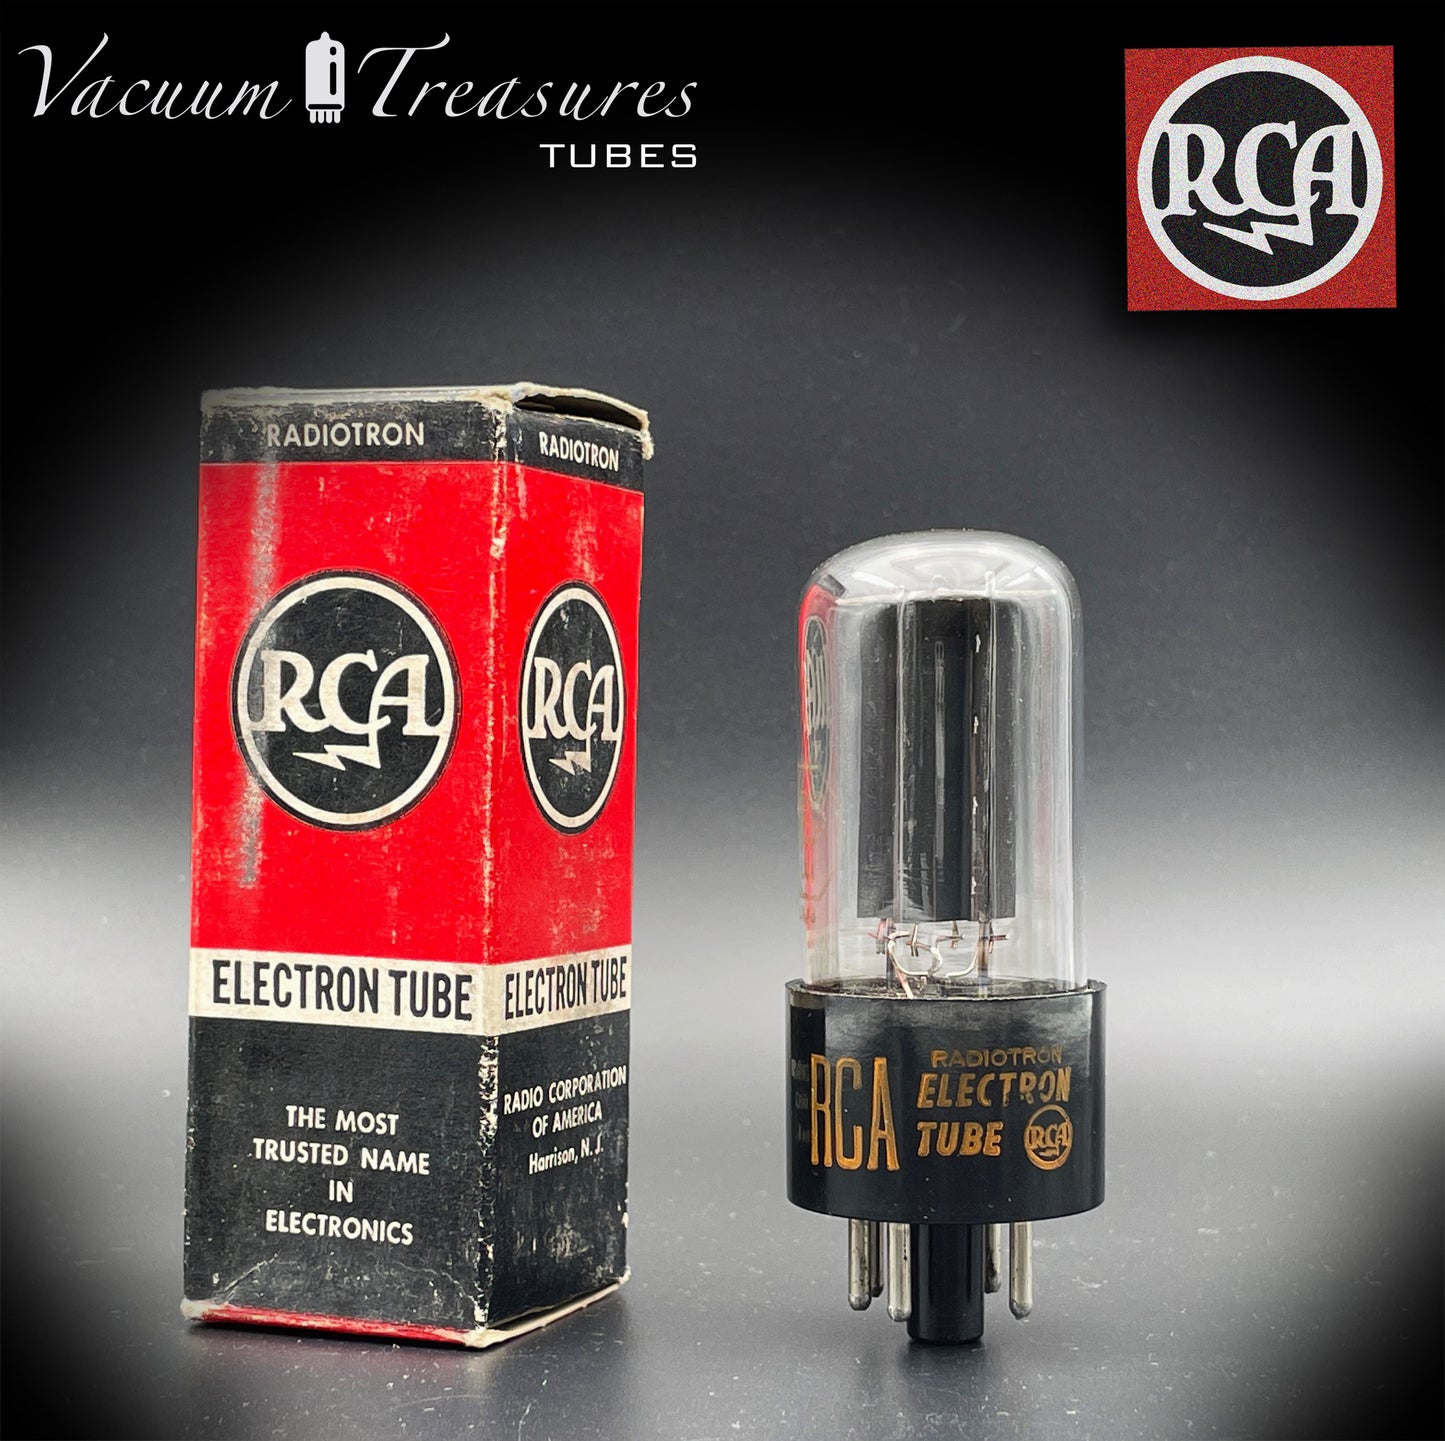 5Y3GT ( 5Z2P ) RCA plaques noires D/[] Getter Tube redresseur fabriqué aux États-Unis '56